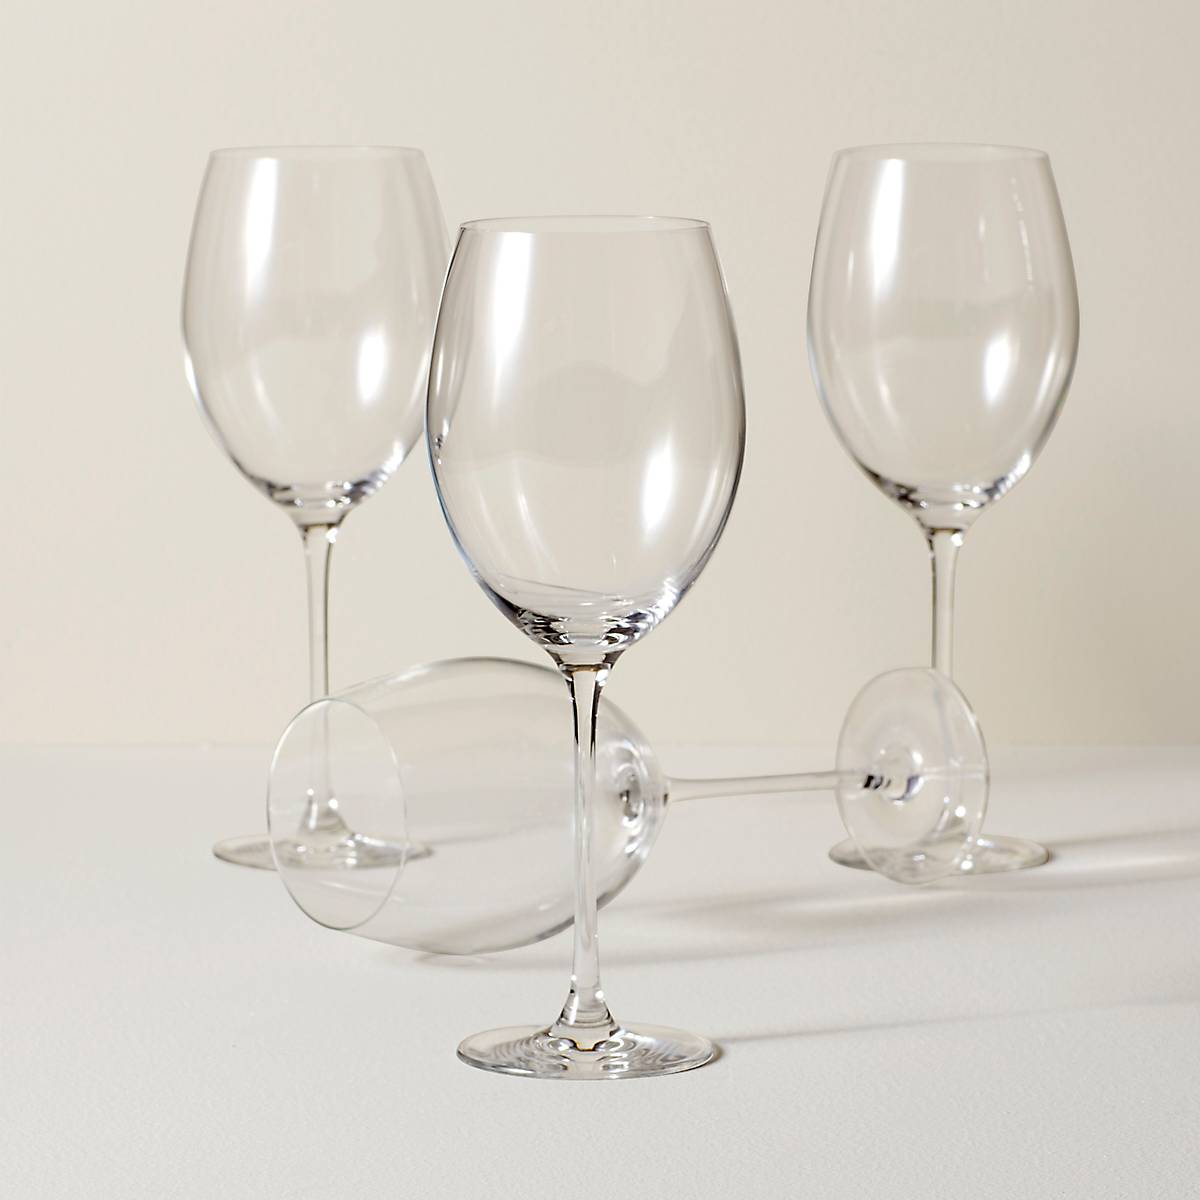 CLASSIC BORDEAUX WINE GLASS